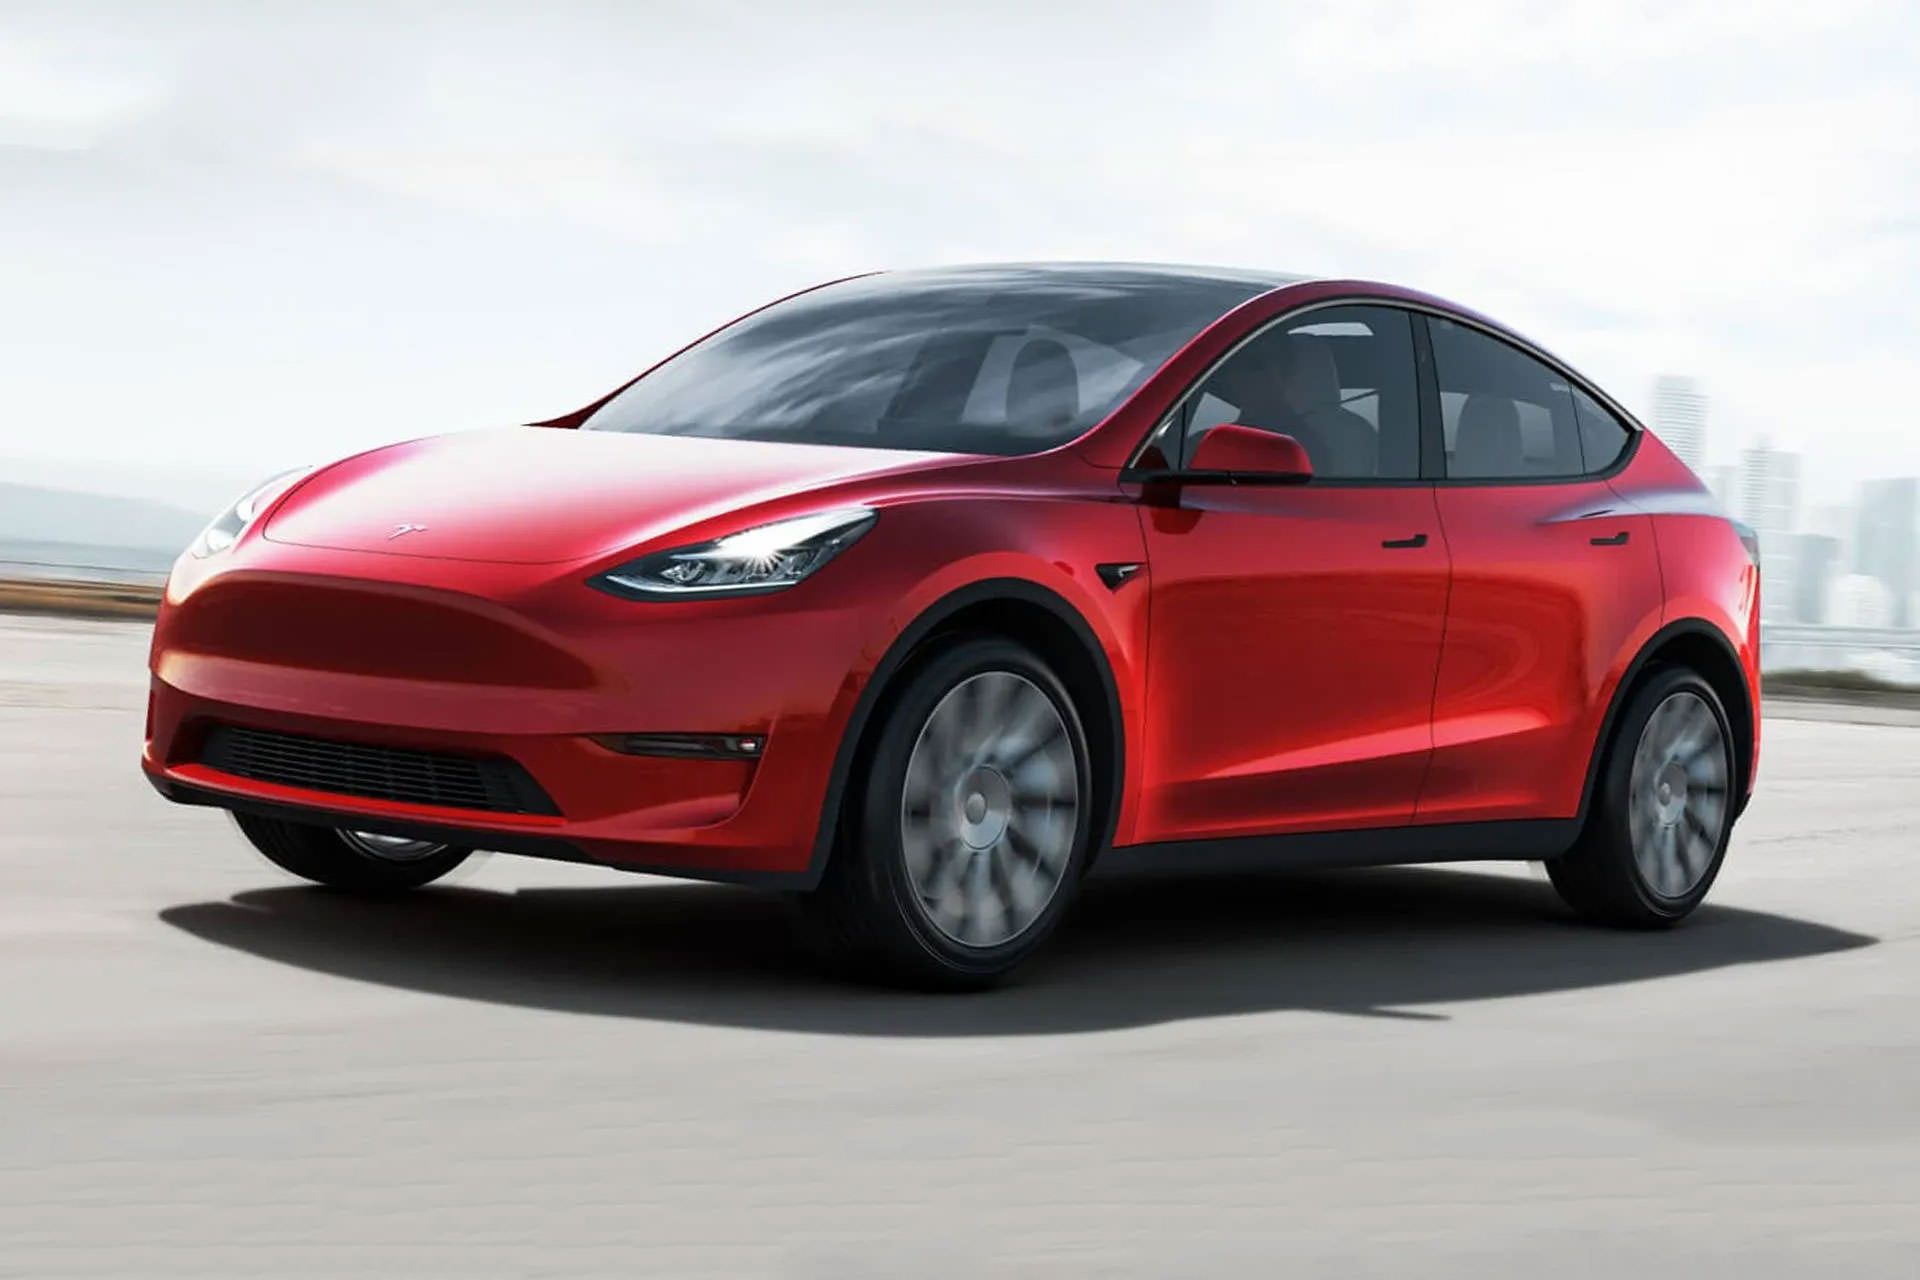 تسلا مدل Y قرمز رنگ در جاده / Tesla Model Y